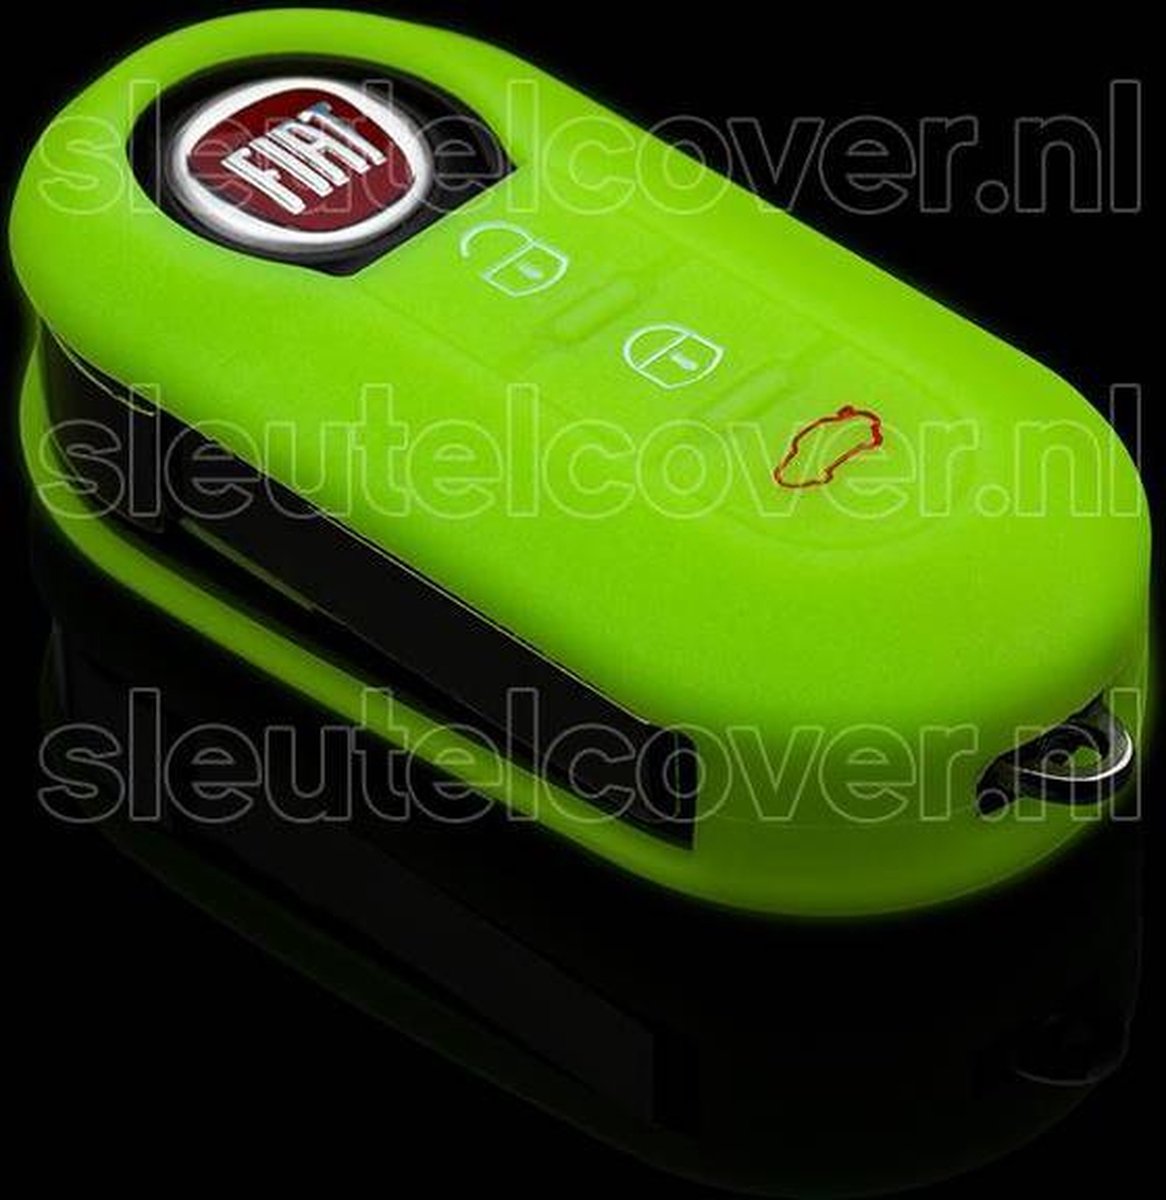 Autosleutel Hoesje geschikt voor Fiat - SleutelCover - Silicone Autosleutel Cover - Sleutelhoesje Glow in the dark / Lichtgevend